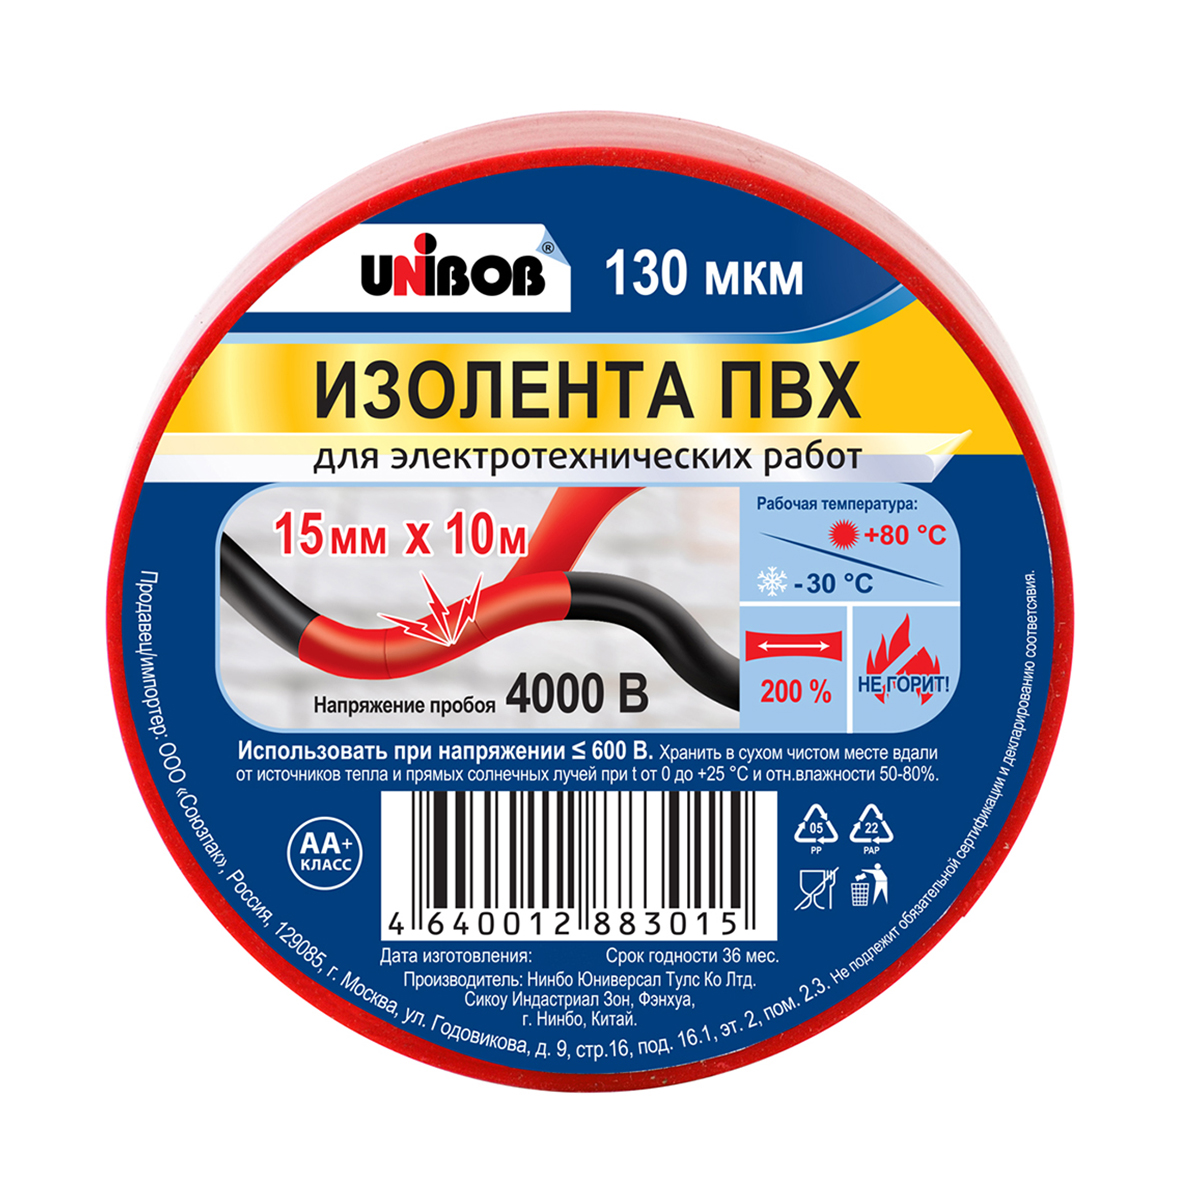 Изолента пвх 15 мм х 10 м красная, 130 мкм (10/120) "unibob"